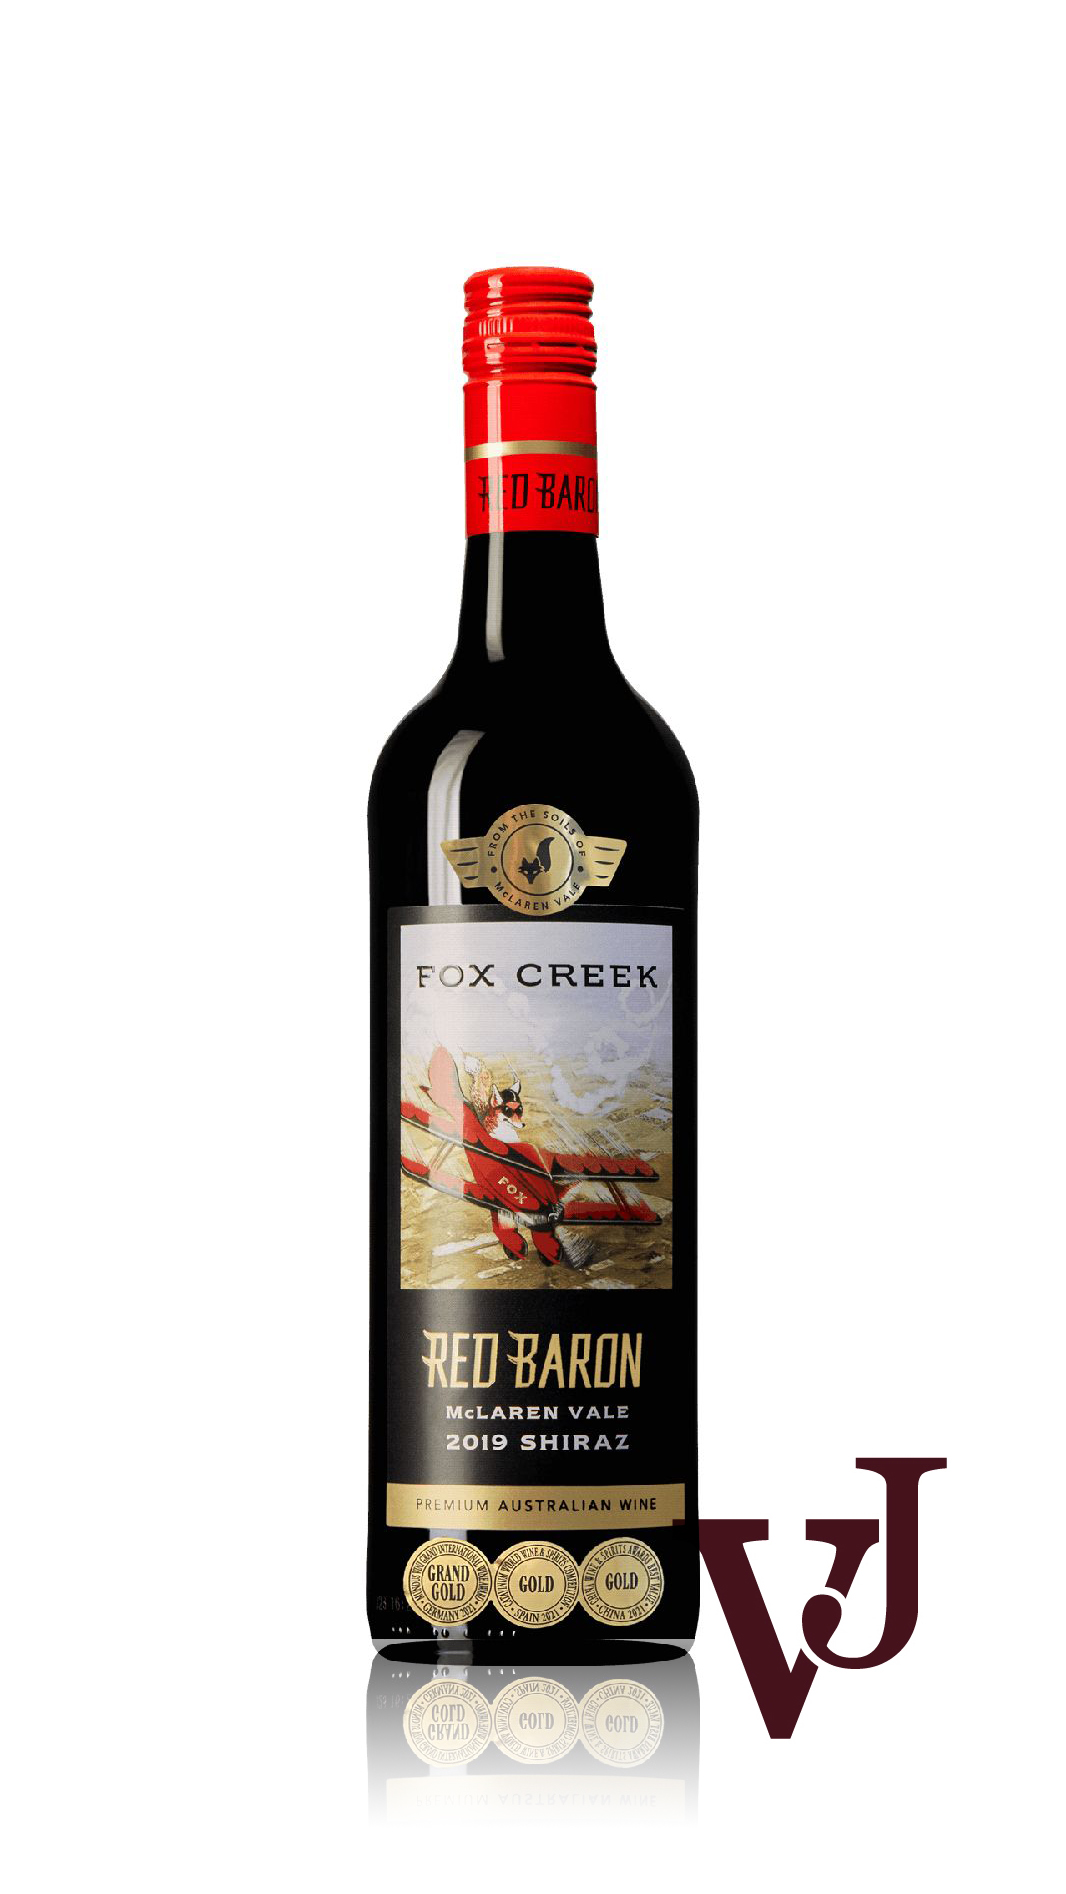 Rött Vin - Red Baron Shiraz artikel nummer 219401 från producenten Fox Creek Wines från området Australien